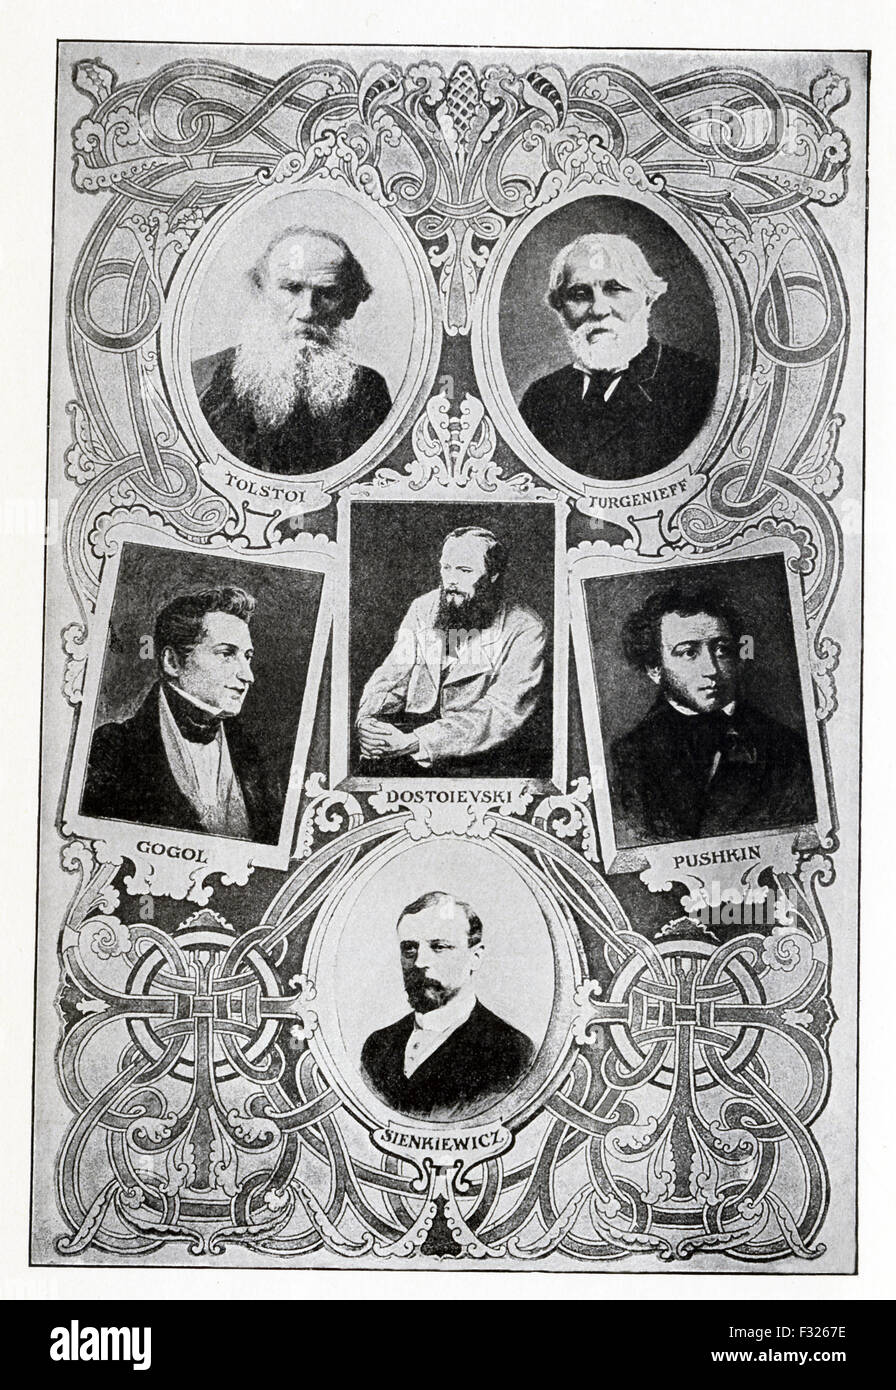 Die russischen Autoren, die hier abgebildet sind, von links nach rechts und von oben nach unten: Tolstoi (1828-1910), Turgenieff (Turgenjew) (1818 – 1883), Gogol (1908-1852), Dostojewski (1821-1881), Puschkin (1799-1837) und Sienkiewicz (1846-1916). Stockfoto